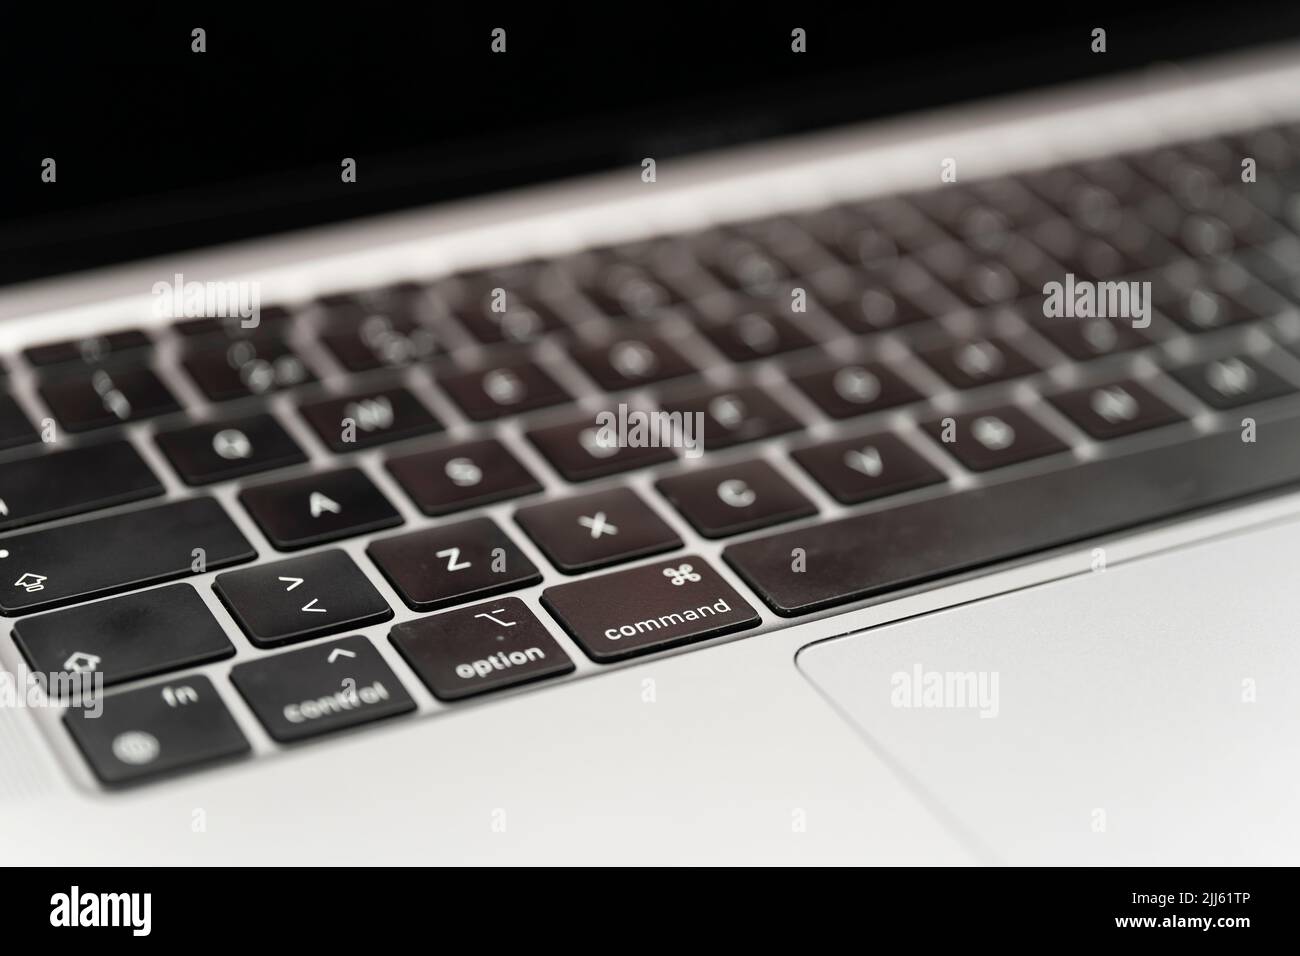 Primer plano del teclado de la Apple MacBook Air con Apple Silicon M1 CPU Foto de stock